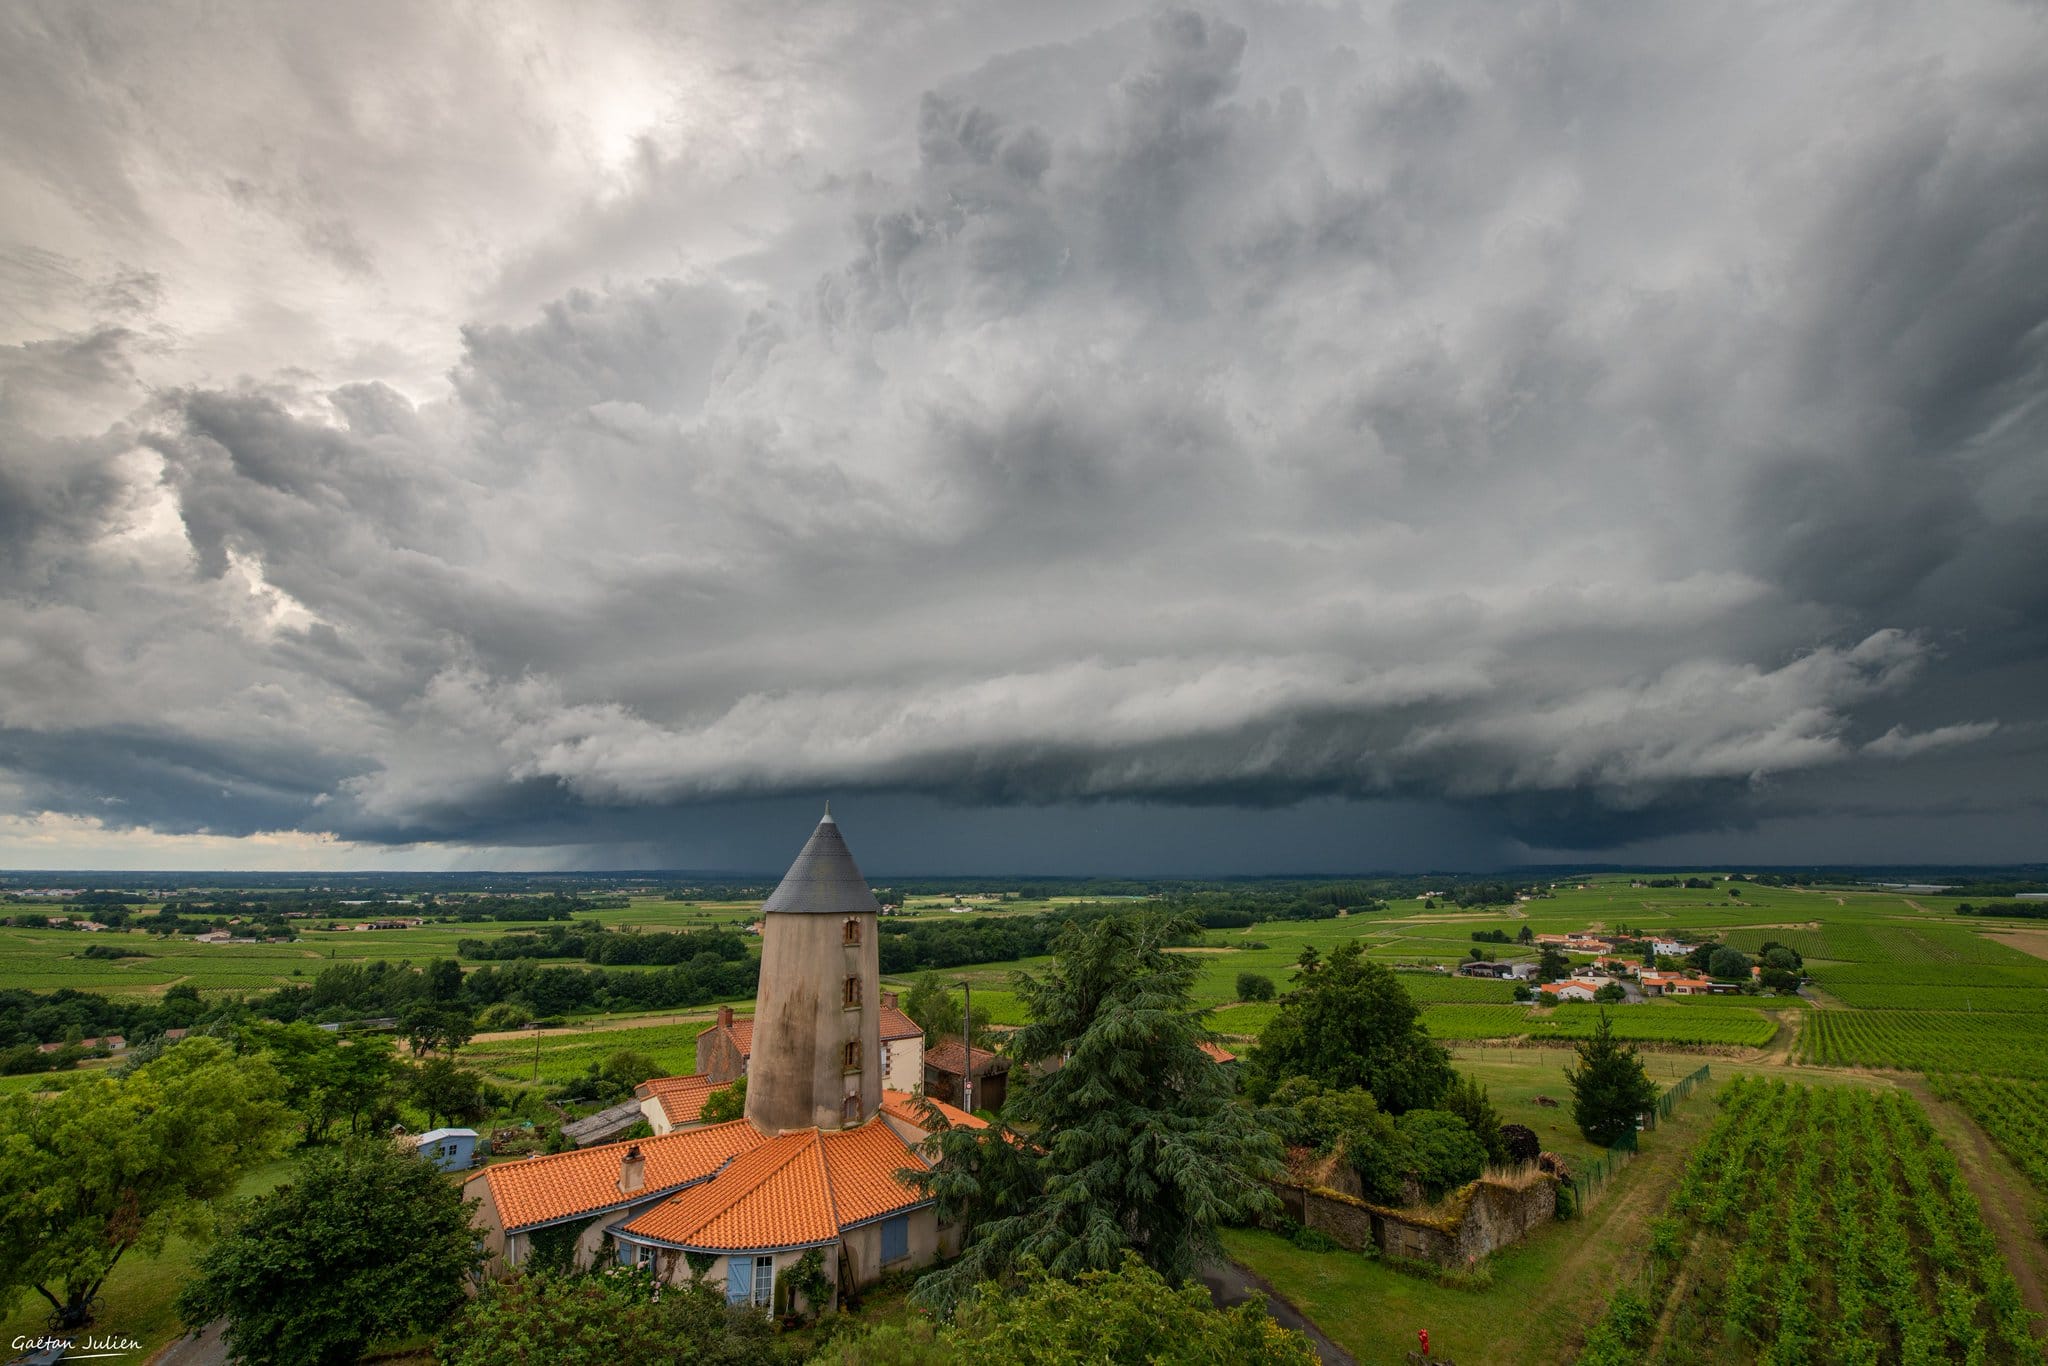 Belle structure orageuse dans la région Nantaise en fin de journée! - 20/06/2021 00:00 - Julien Gaëtan